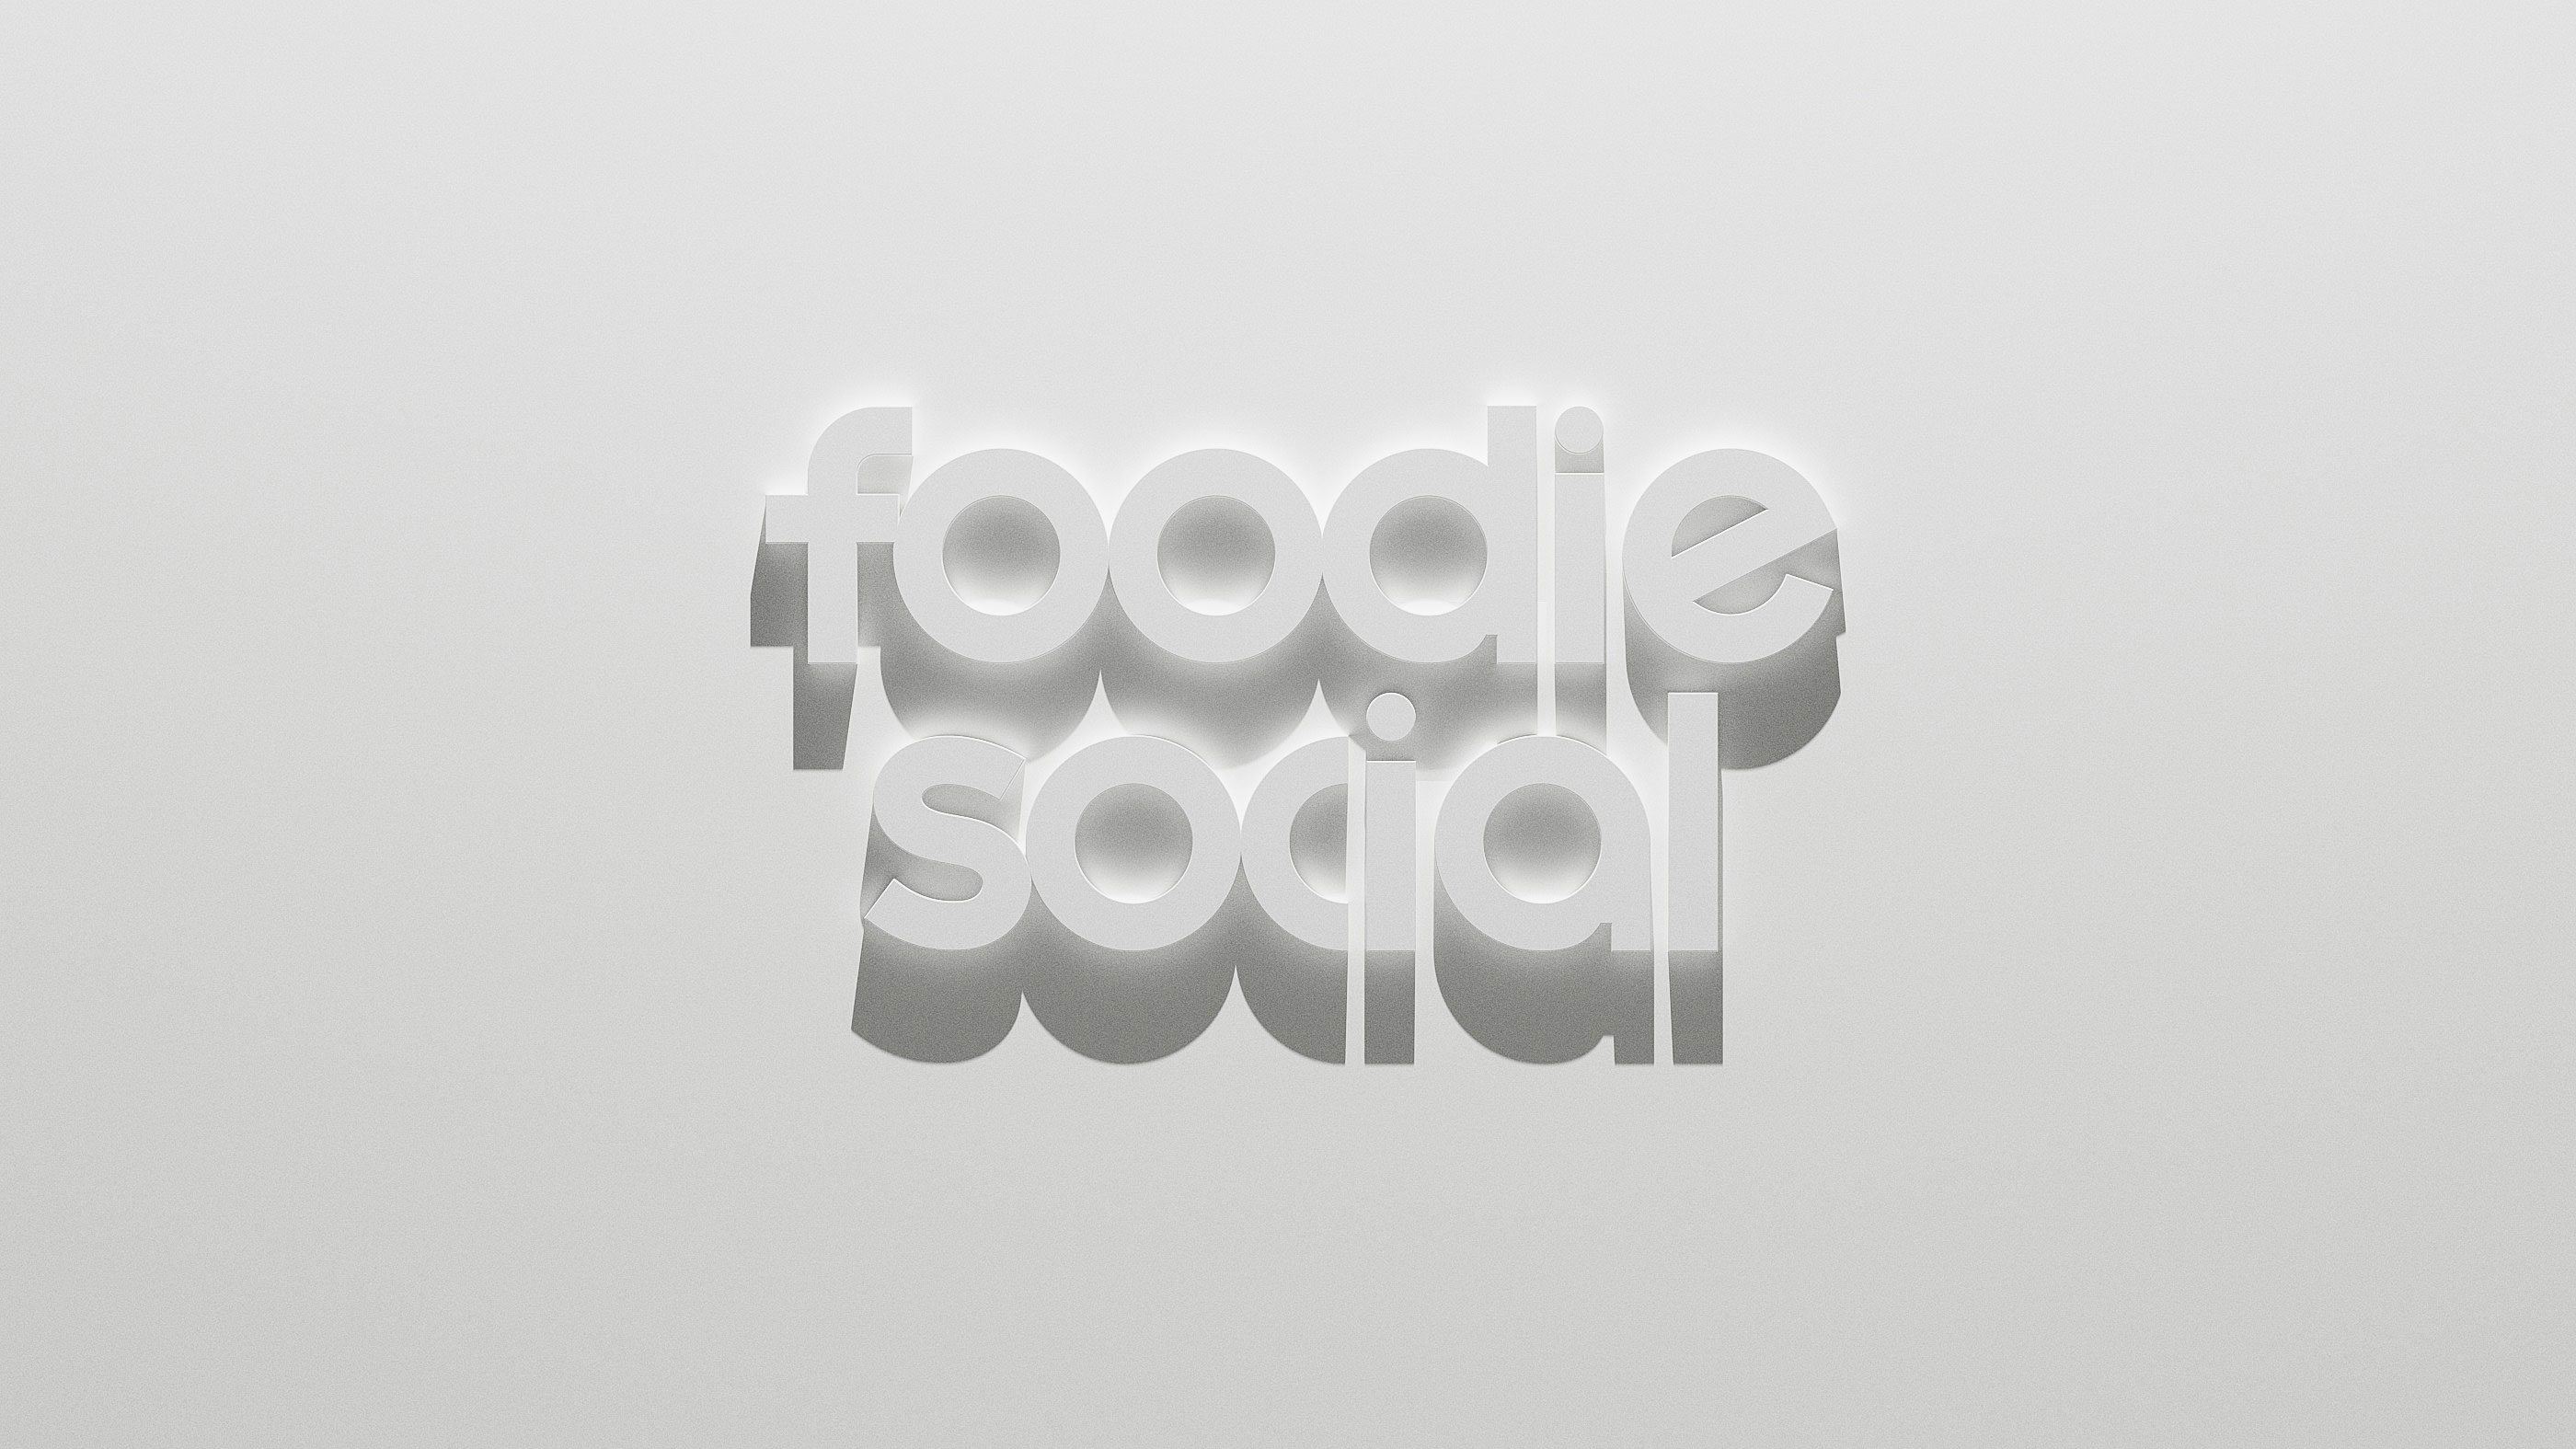 Foodie Social